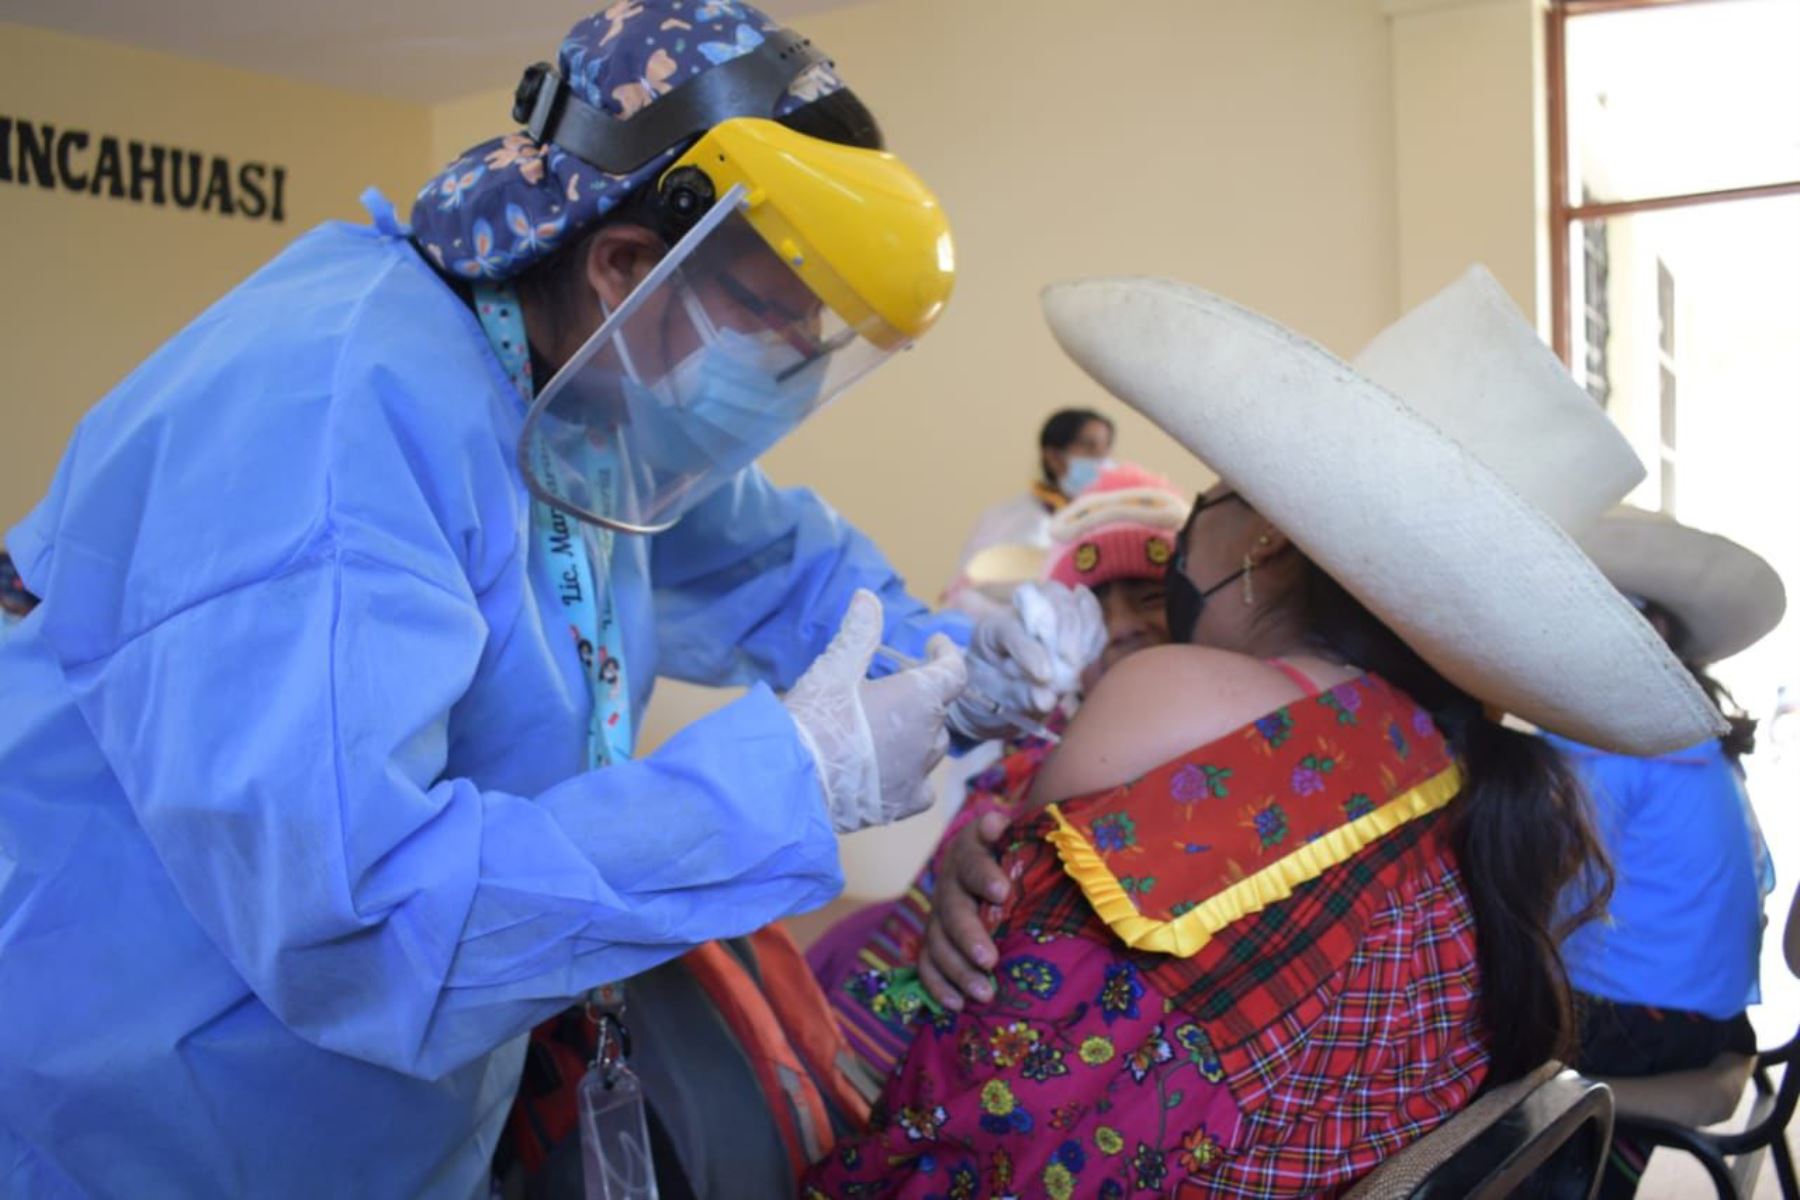 Los pobladores de 18 años a más del distrito de Incahuasi acuden a los centros de vacunación ubicados en Uyurpampa e Incahuasi para recibir la vacuna. Foto: ANDINA/difusión.